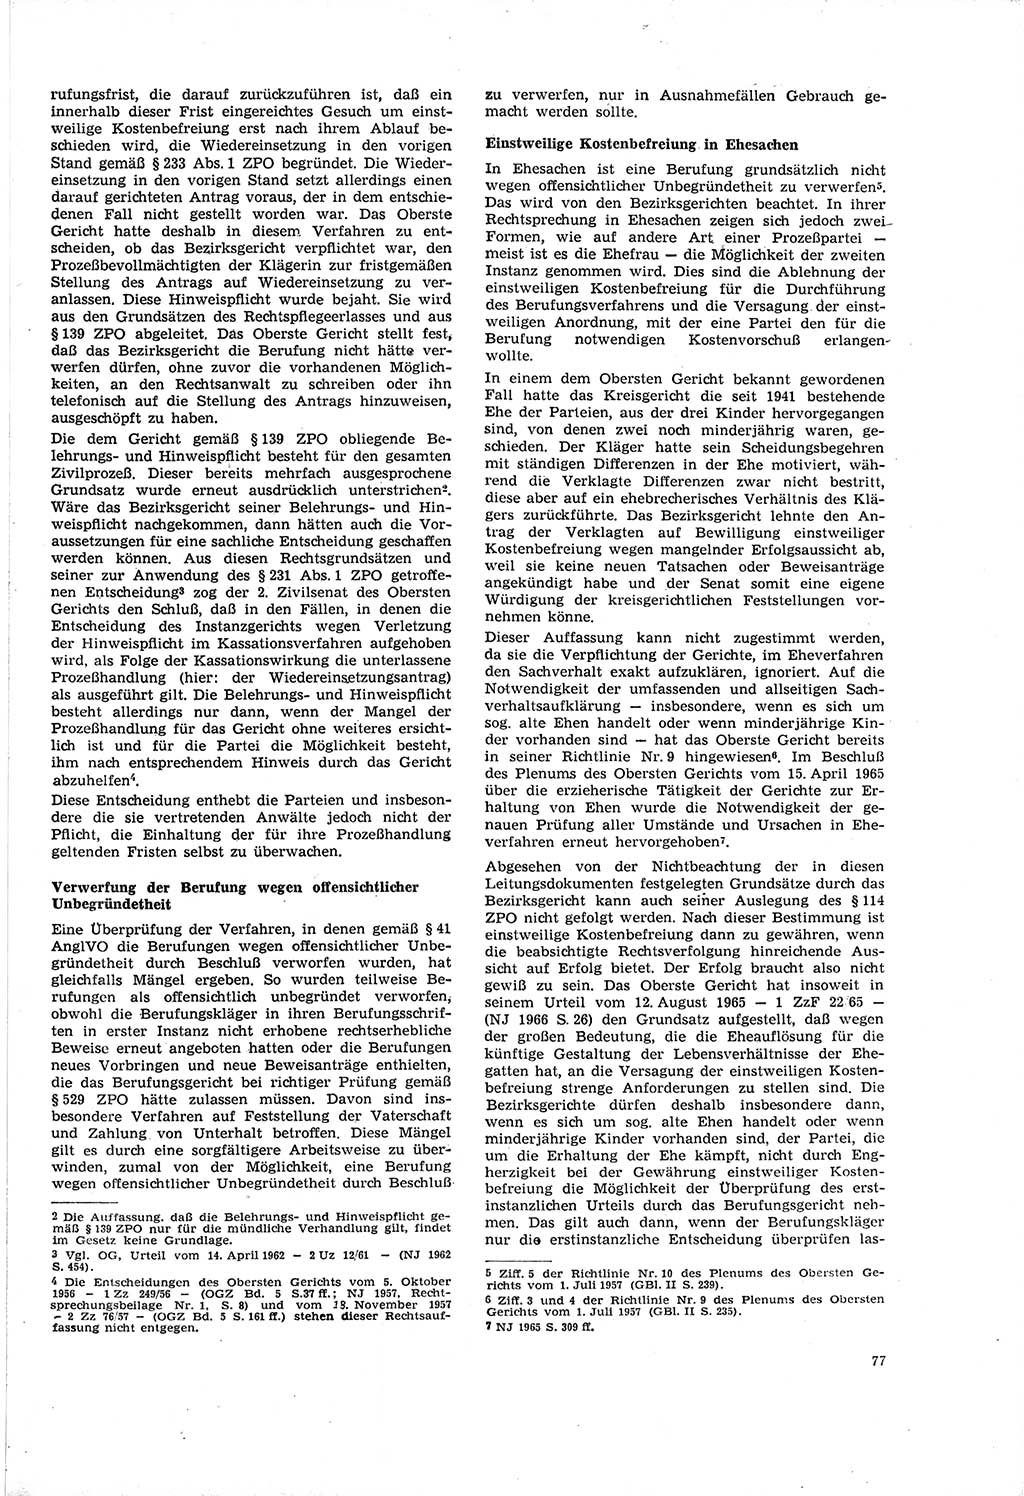 Neue Justiz (NJ), Zeitschrift für Recht und Rechtswissenschaft [Deutsche Demokratische Republik (DDR)], 20. Jahrgang 1966, Seite 77 (NJ DDR 1966, S. 77)